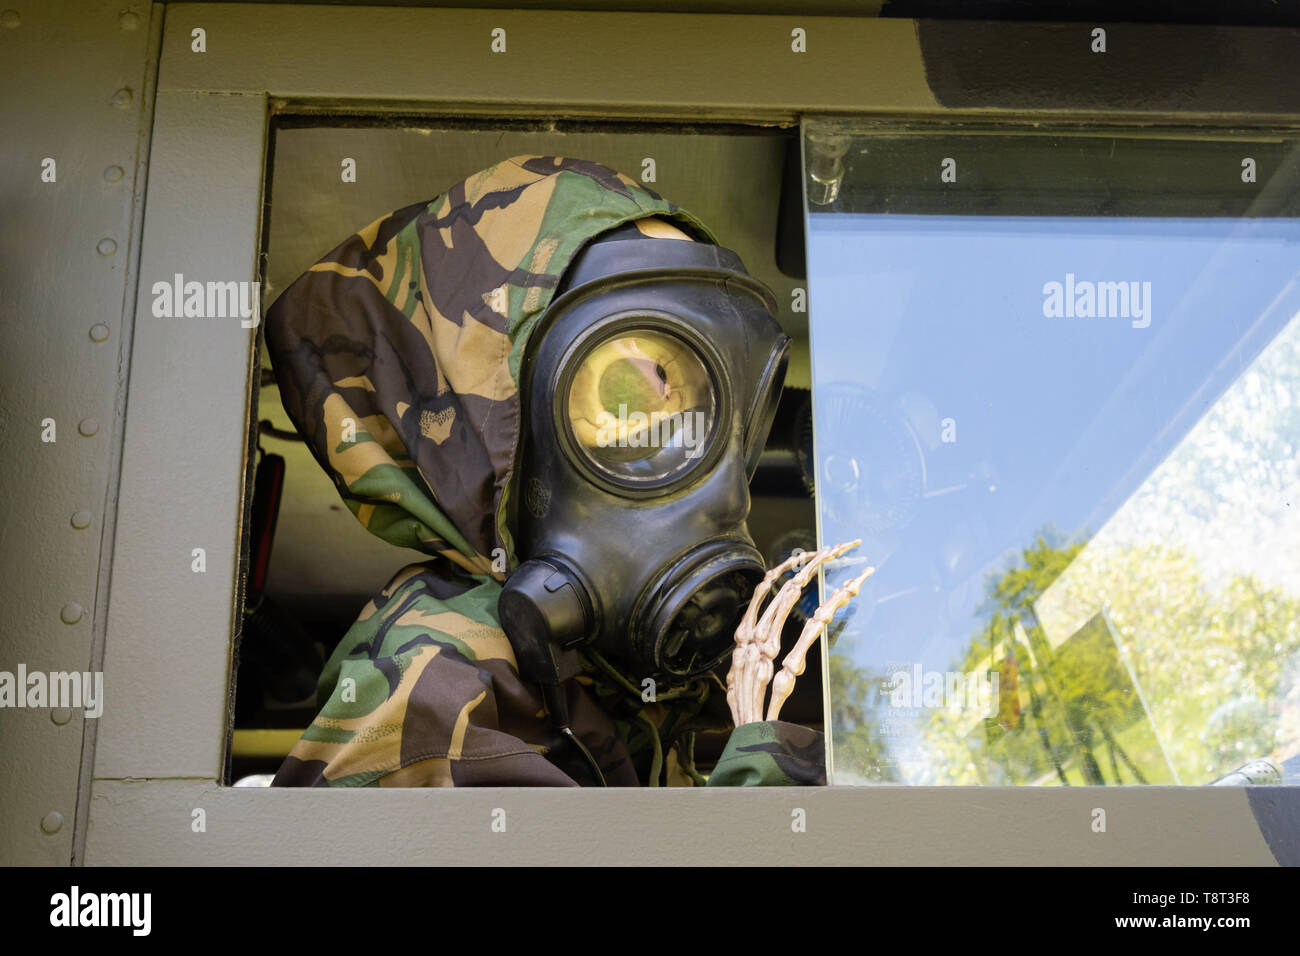 Lo scheletro vestito come un soldato che indossa una maschera a gas in un veicolo militare a un car show, REGNO UNITO Foto Stock